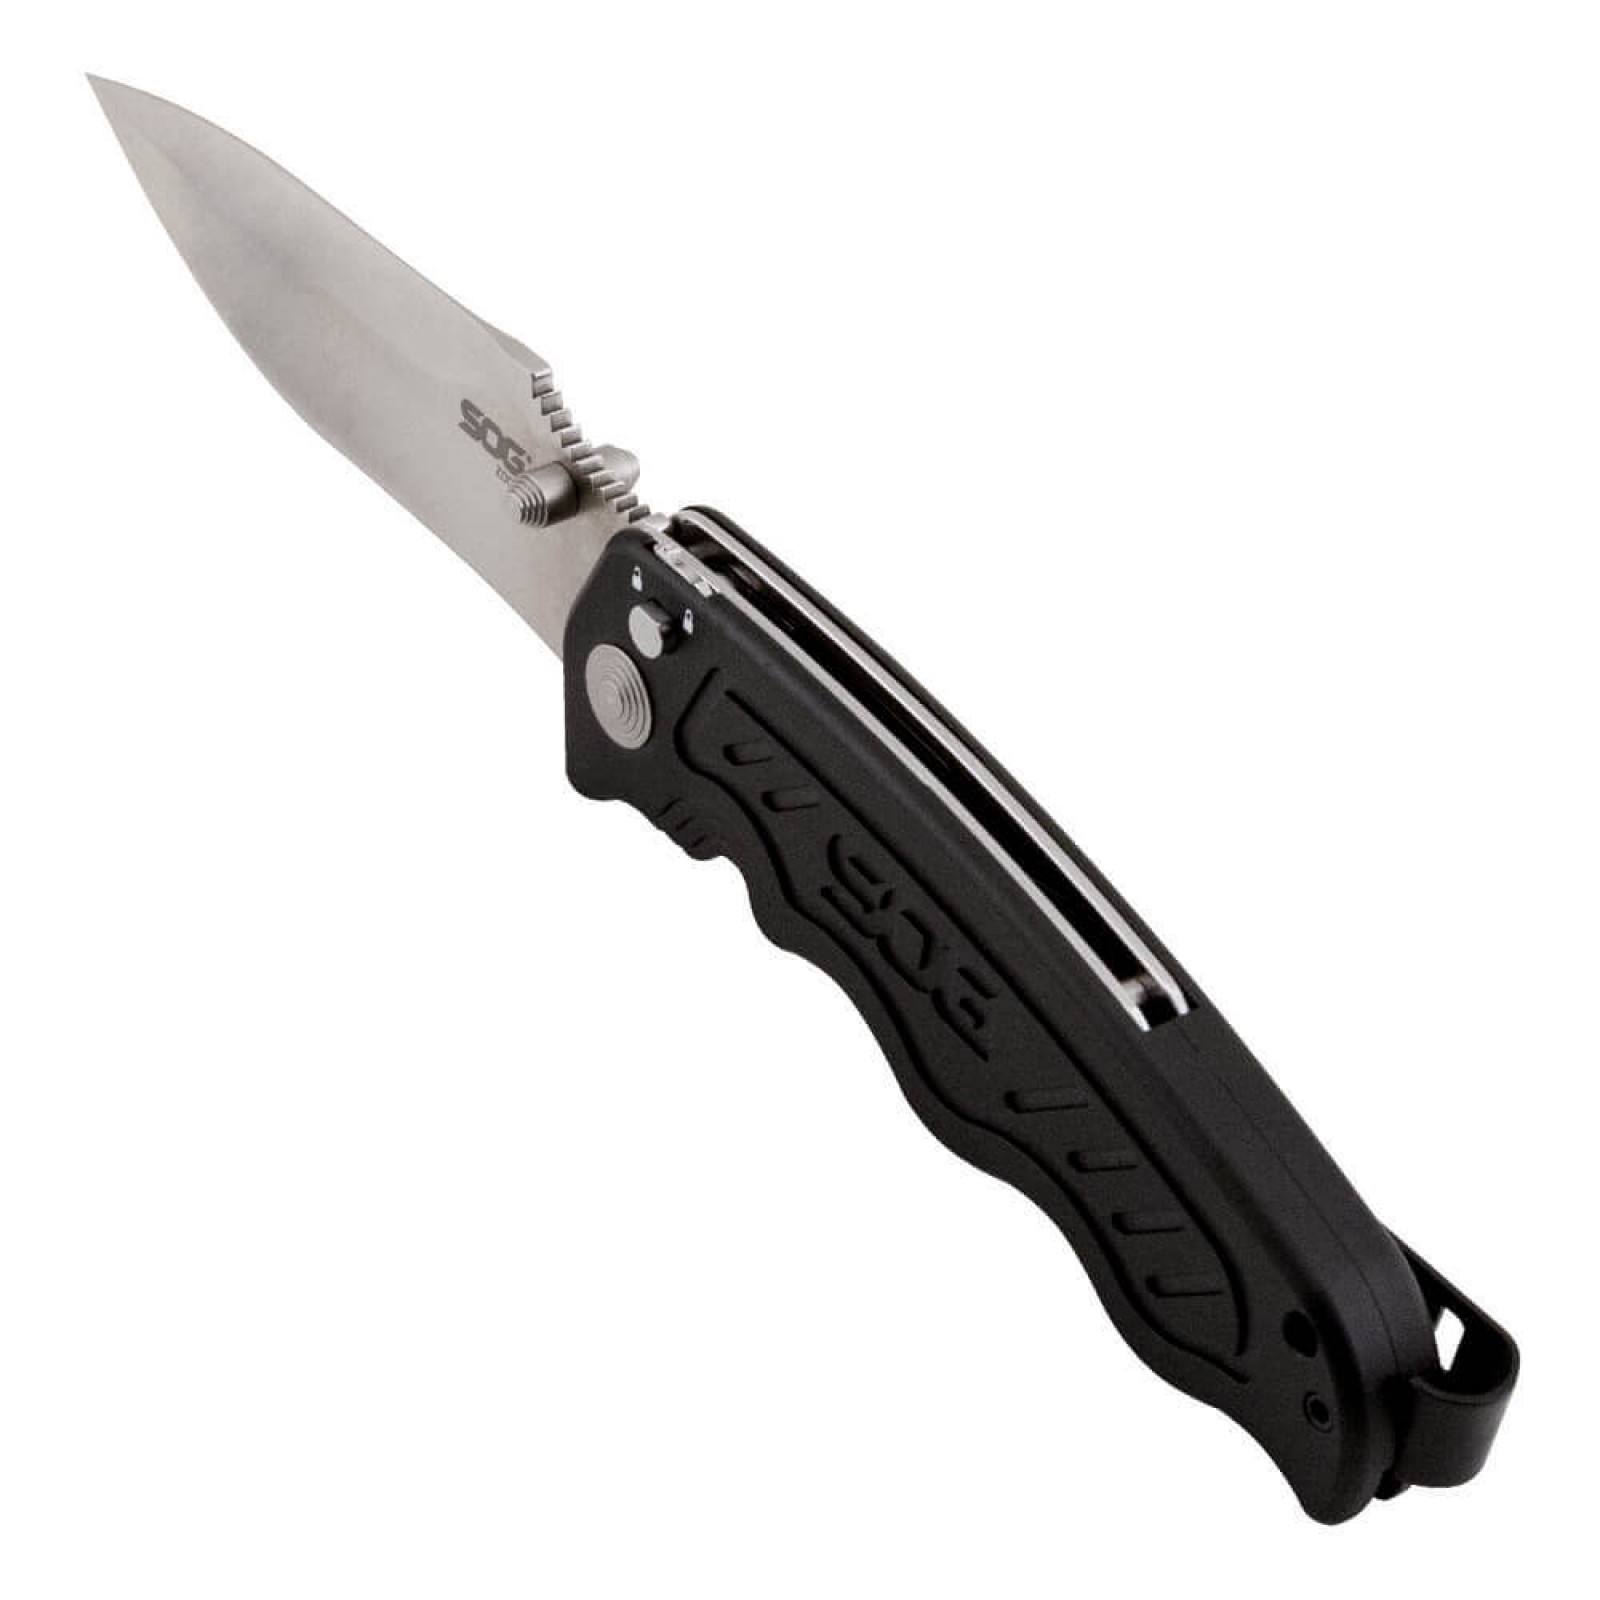 Складной нож Zoom - SOG ZM1011, сталь лезвия AUS-8 Satin Polished, рукоять алюминий, чёрный - фото 4